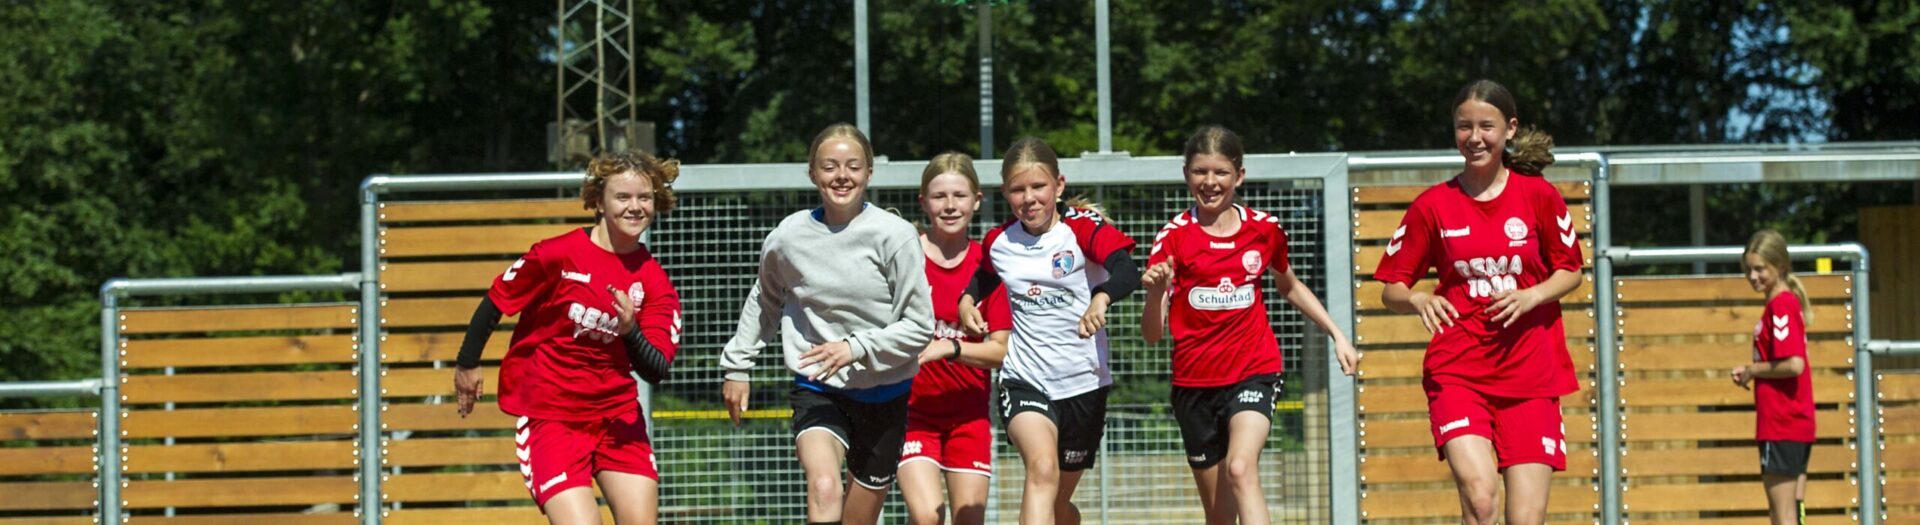 Voetbalmeisjes rennen naar een voetbal